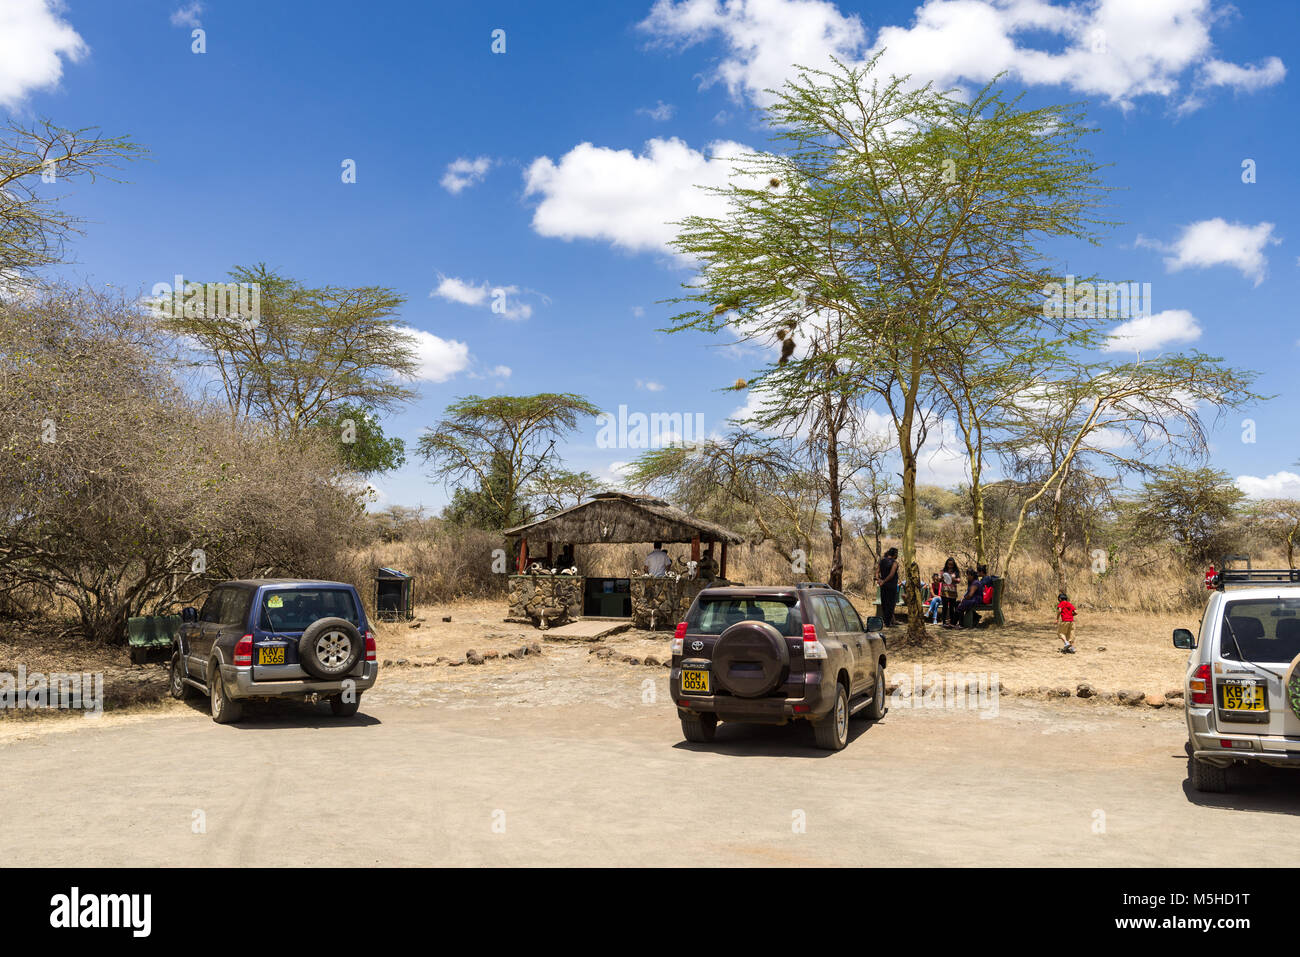 Les véhicules stationnés à l'Hippo piscines parking dans le Parc National de Nairobi avec des gens à l'ombre des arbres, au Kenya Banque D'Images